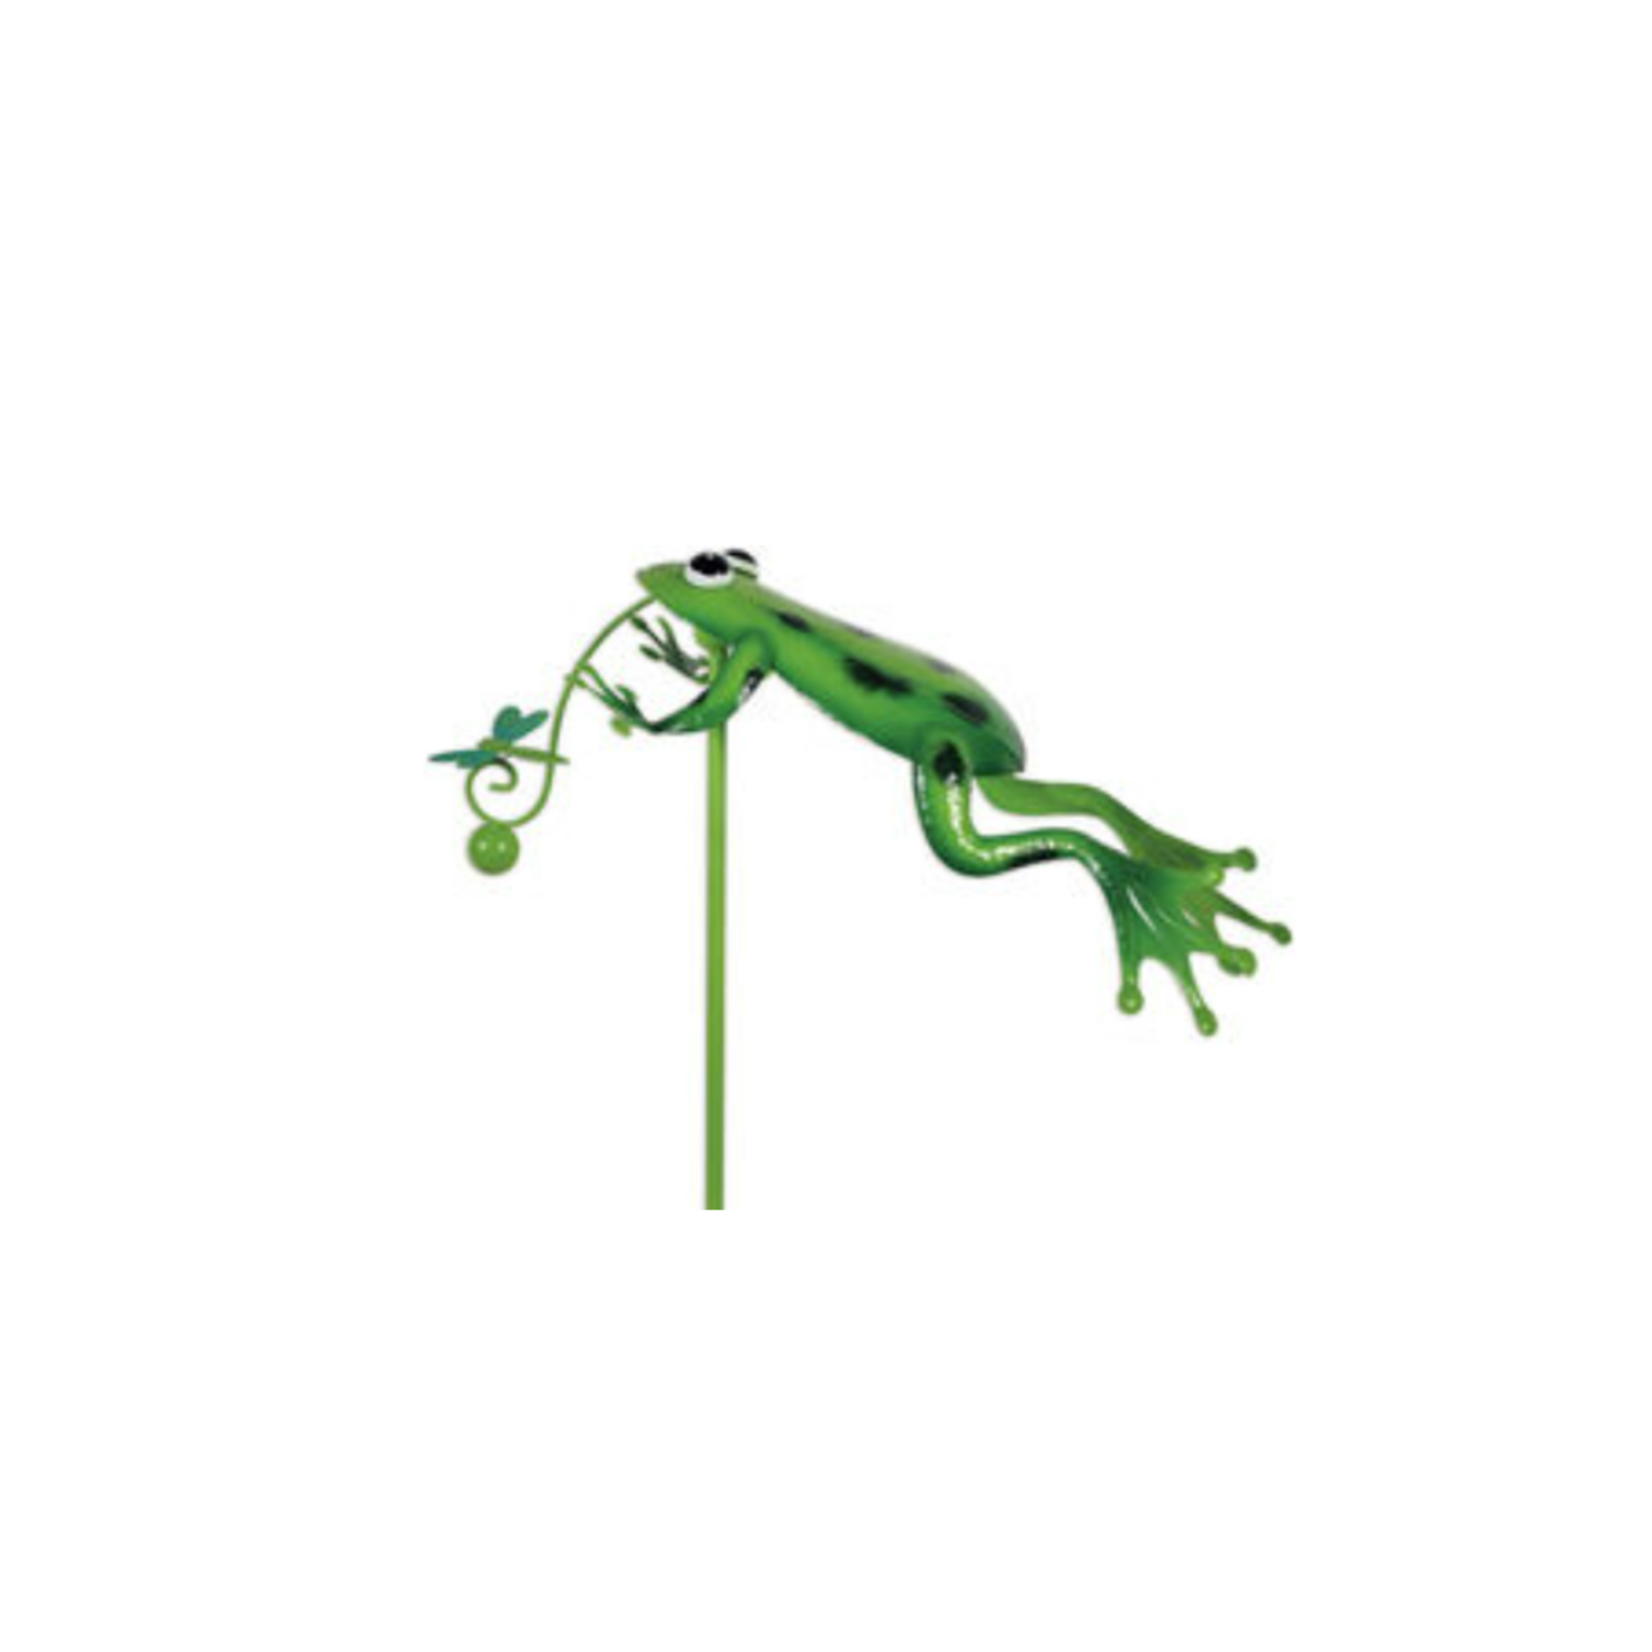 Balancer - Frog & Dragonfly